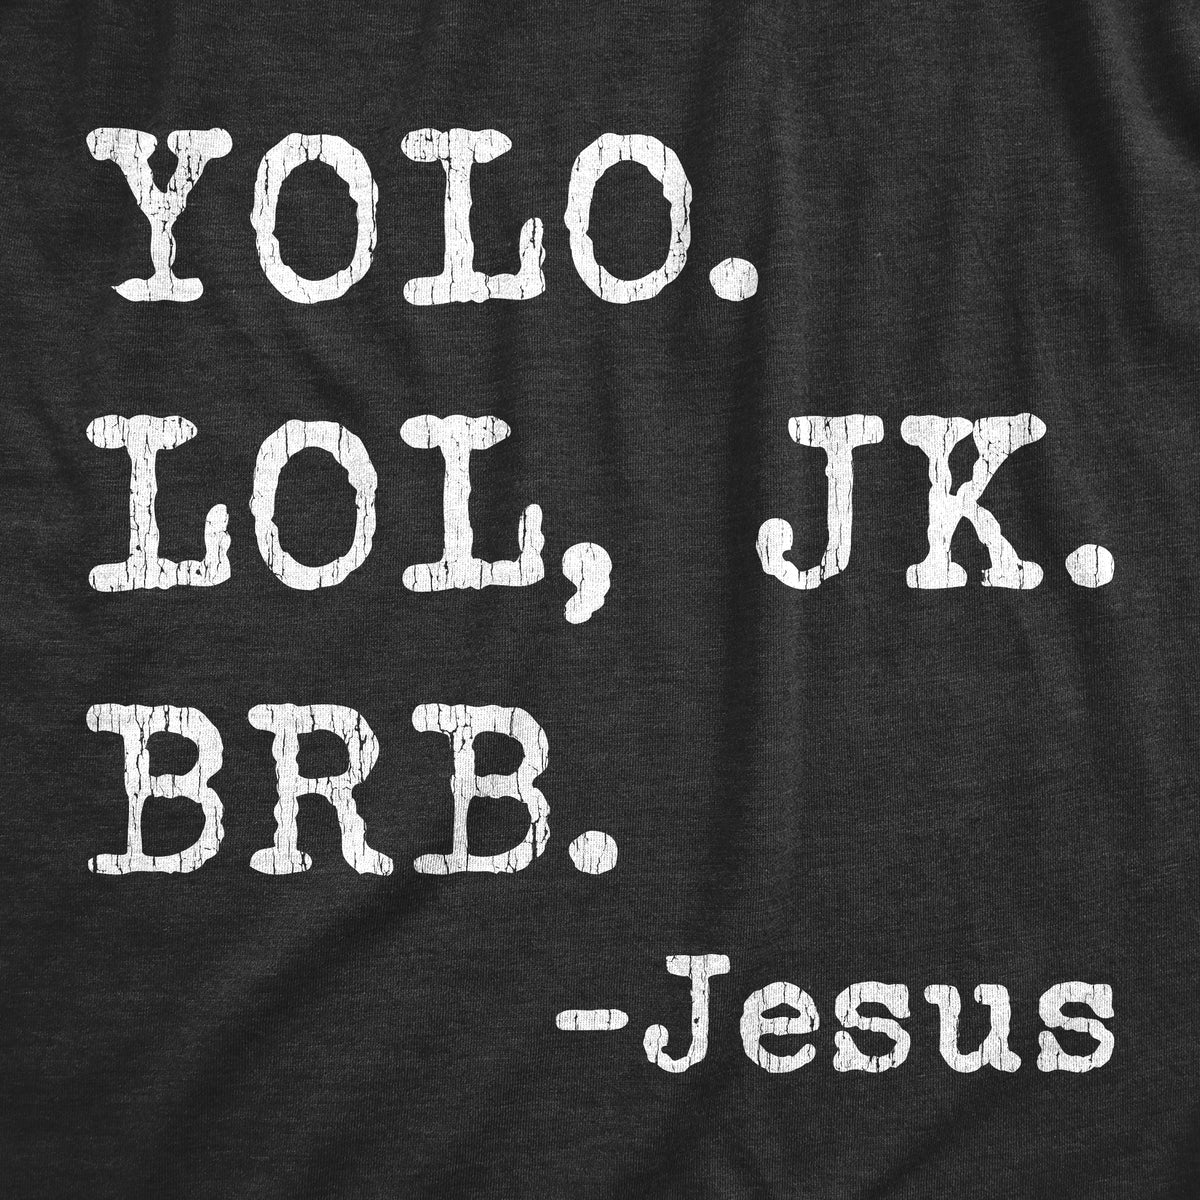 Yolo Lol Jk Brb - Jesus Women&#39;s T Shirt